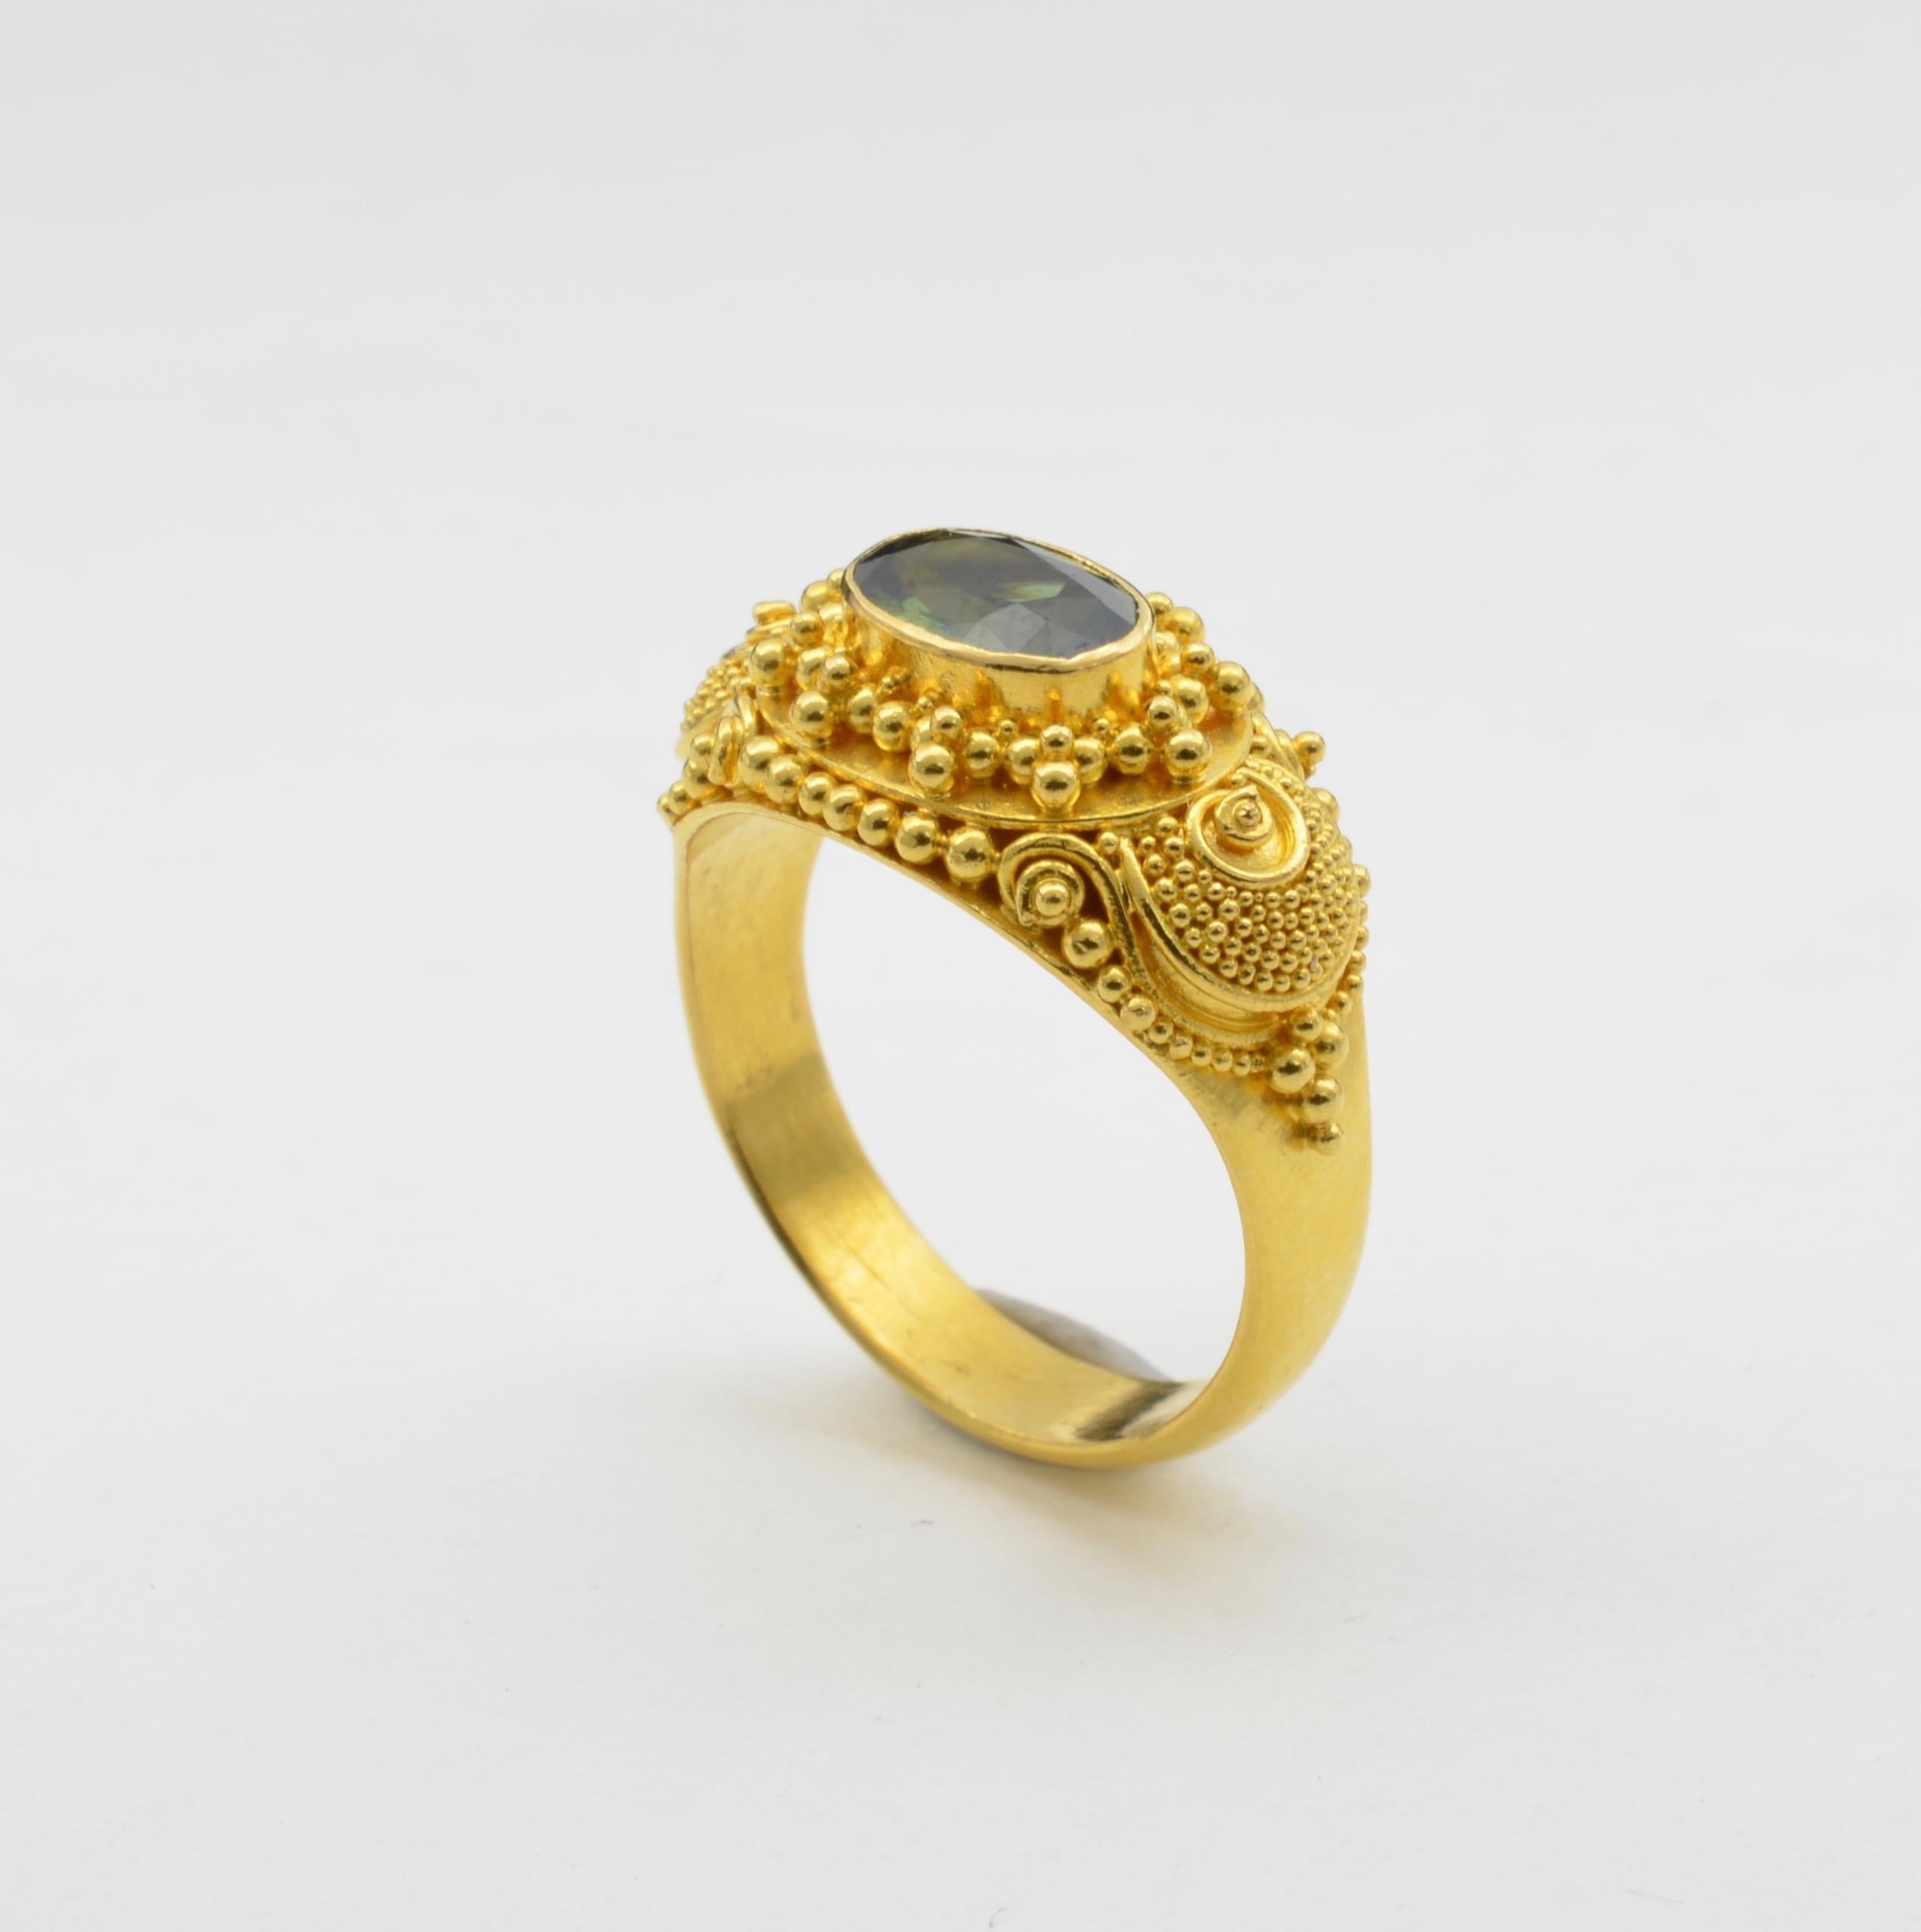 Verschlungene Details und Spiralen umgeben diesen tiefgrünen, facettierten Turmalinring. Dieser Ring aus hochkarätigem 22-karätigem Gelbgold ist ein Statement, das einem Maharaja würdig ist. Königlich, königlich und strahlend leuchtet das Gelbgold